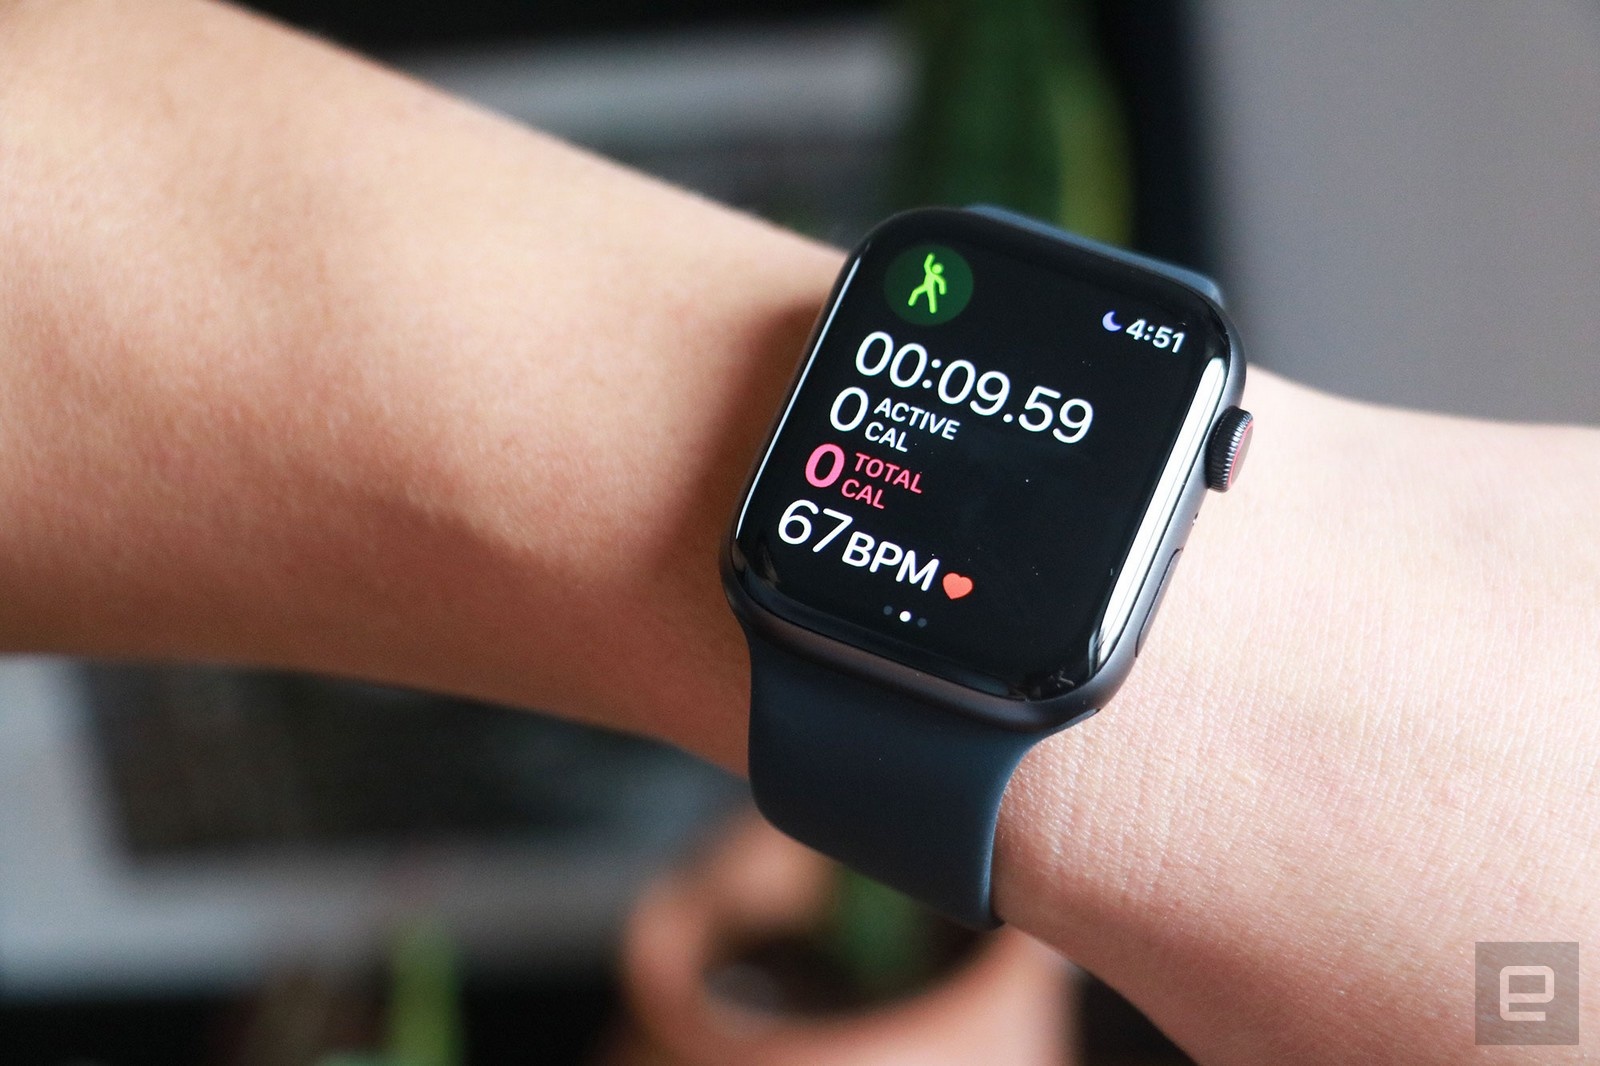 Apple Watch SE GPS 40mm Space Gray Aluminum купить, Эпл Вотч СЕ 40 мм  серые, черный ремешок по выгодной цене в Москве